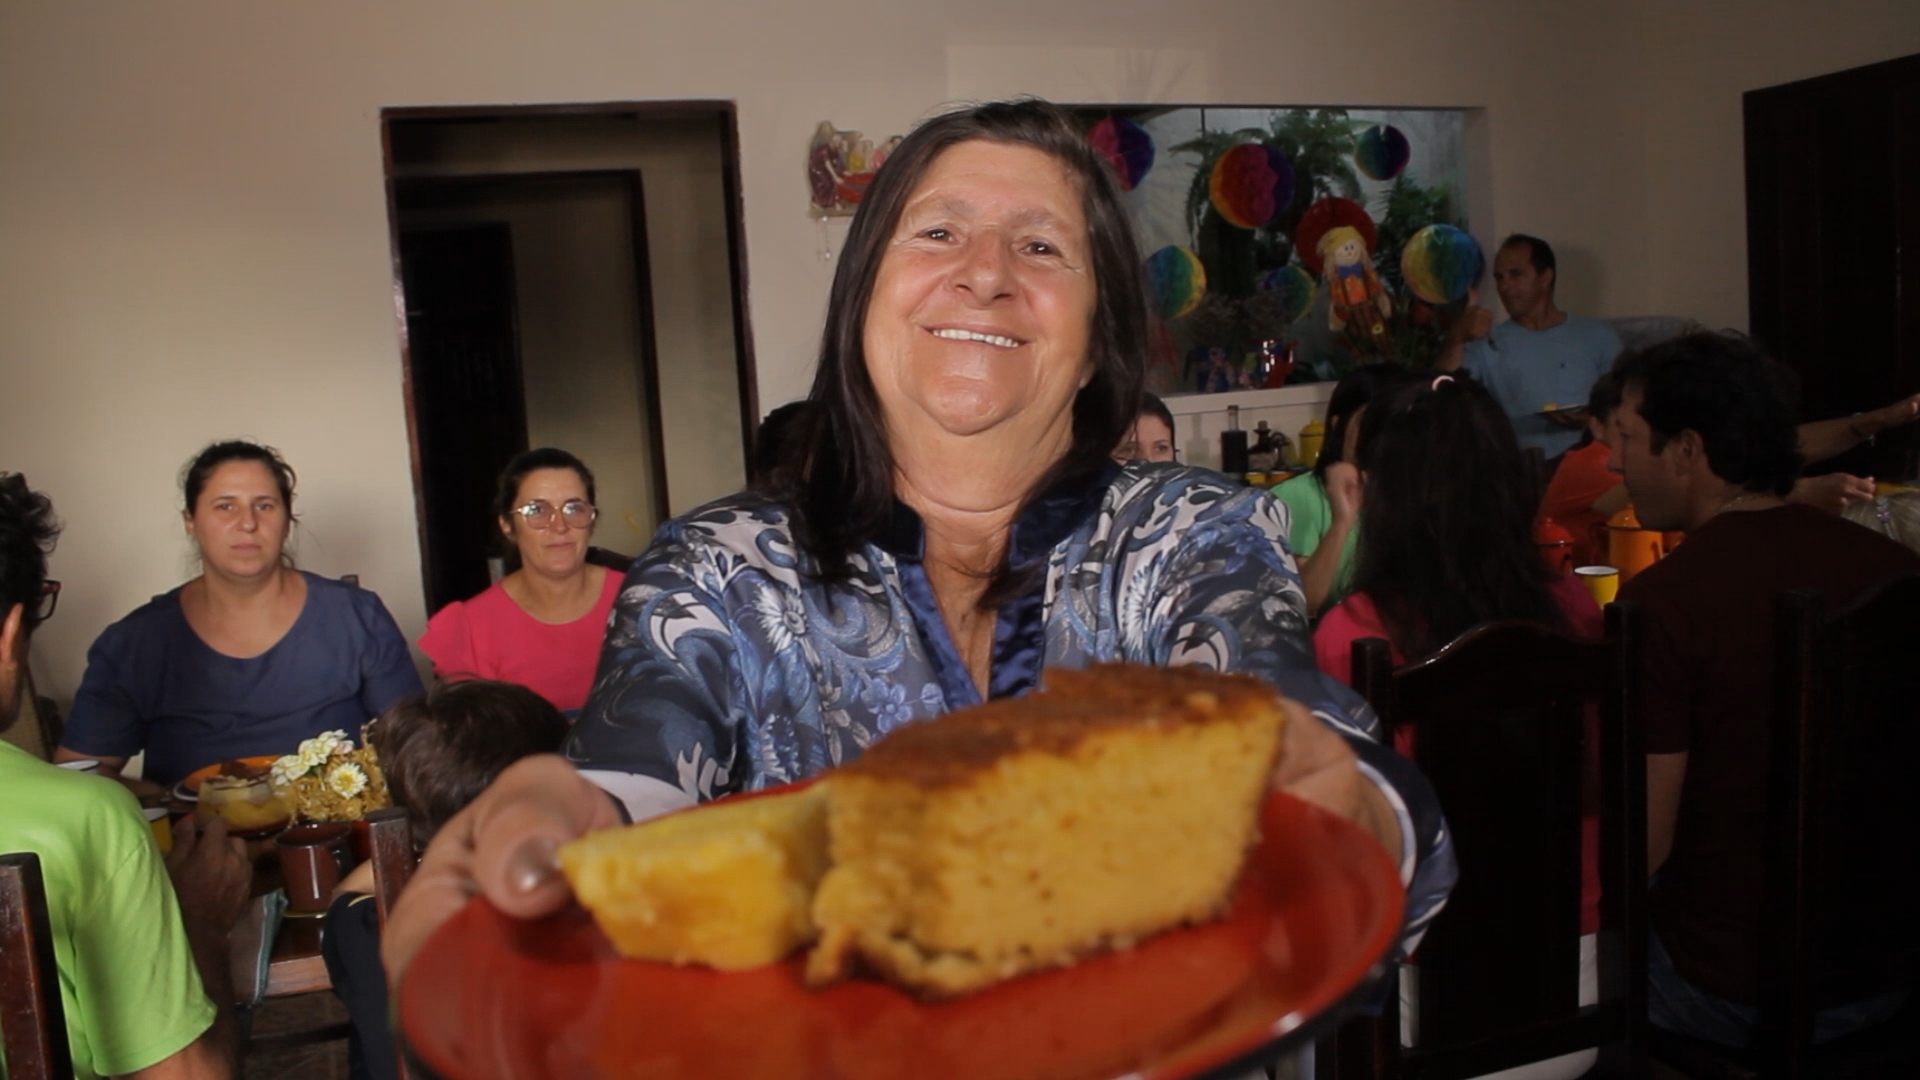 São João: aprenda a fazer bolo de milho de liquidificador